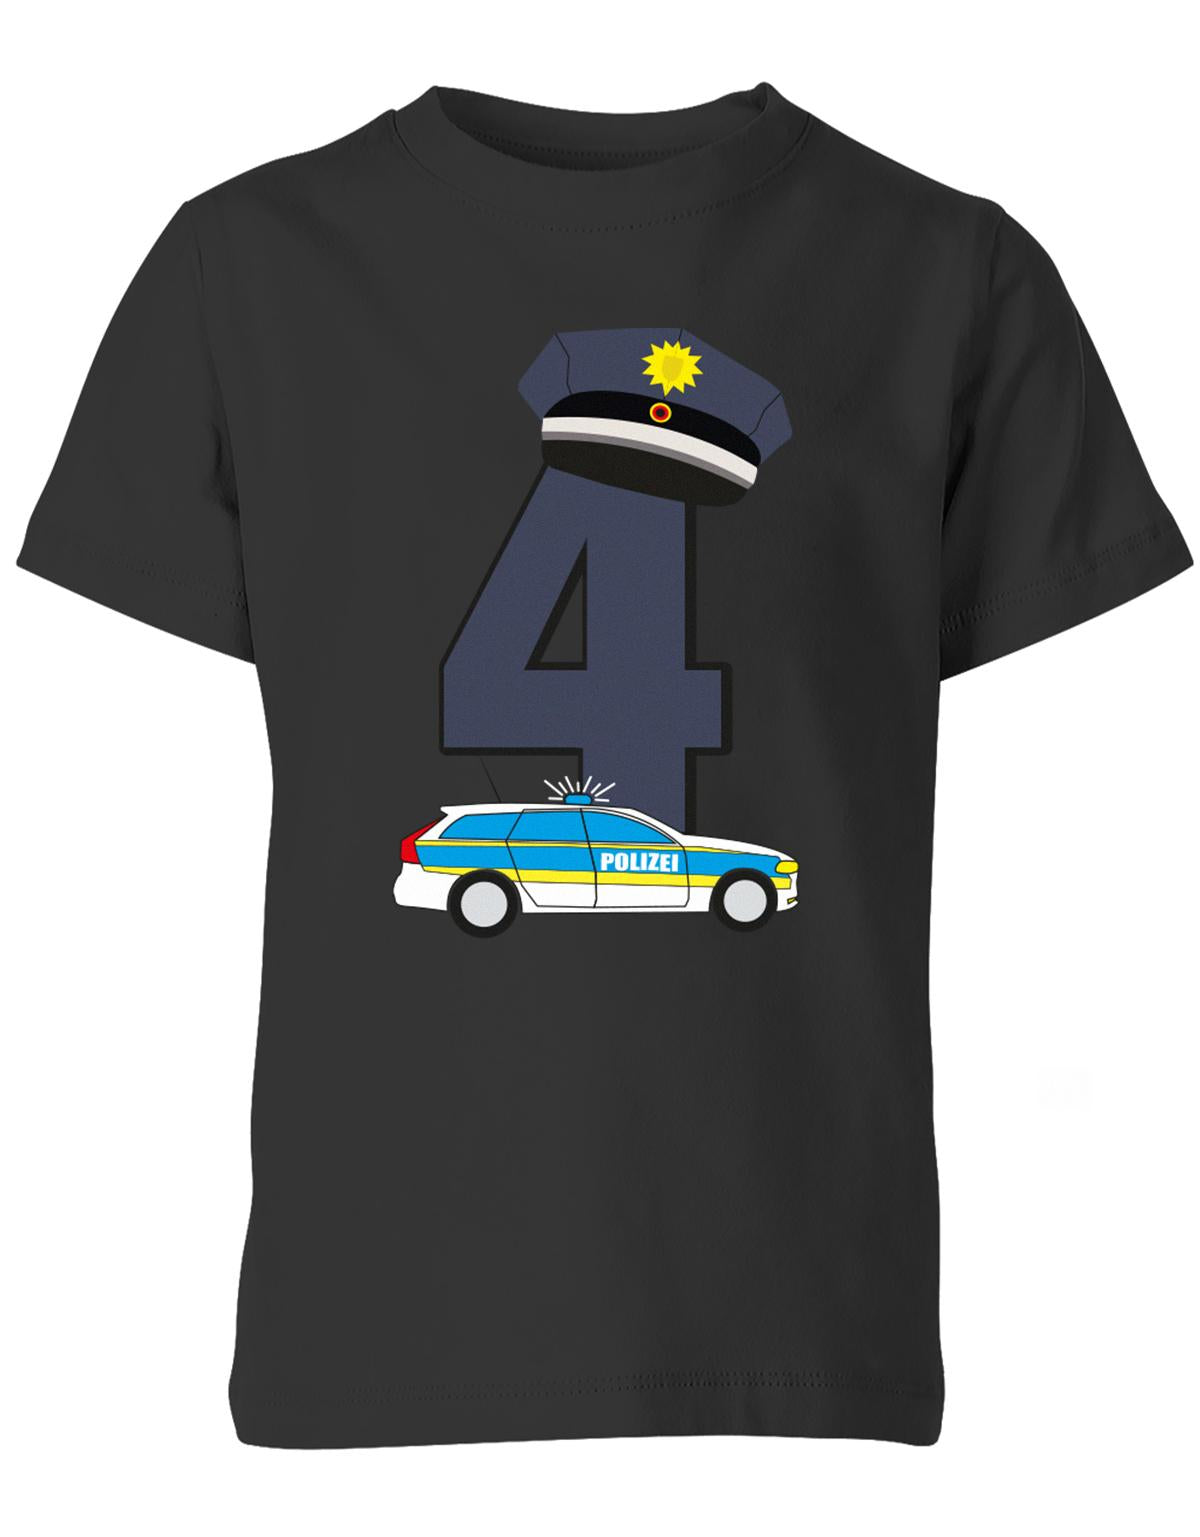 ich-bin-4-polizei-geburtstag-kinder-shirt-schwarz